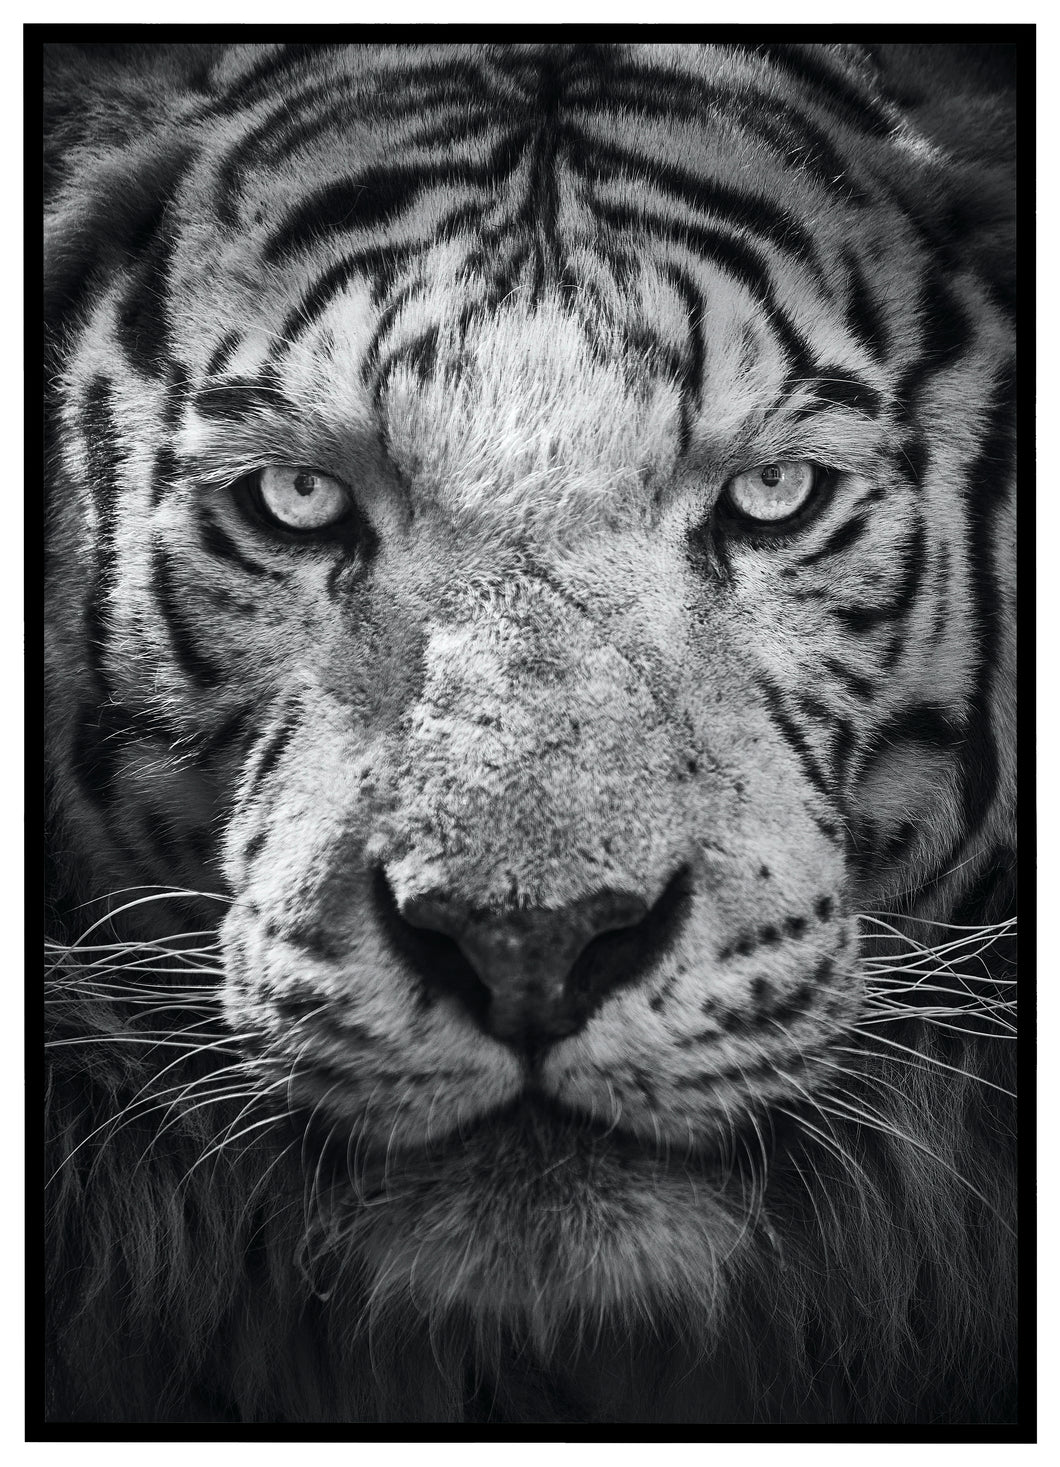 Watching Tiger - Plakat